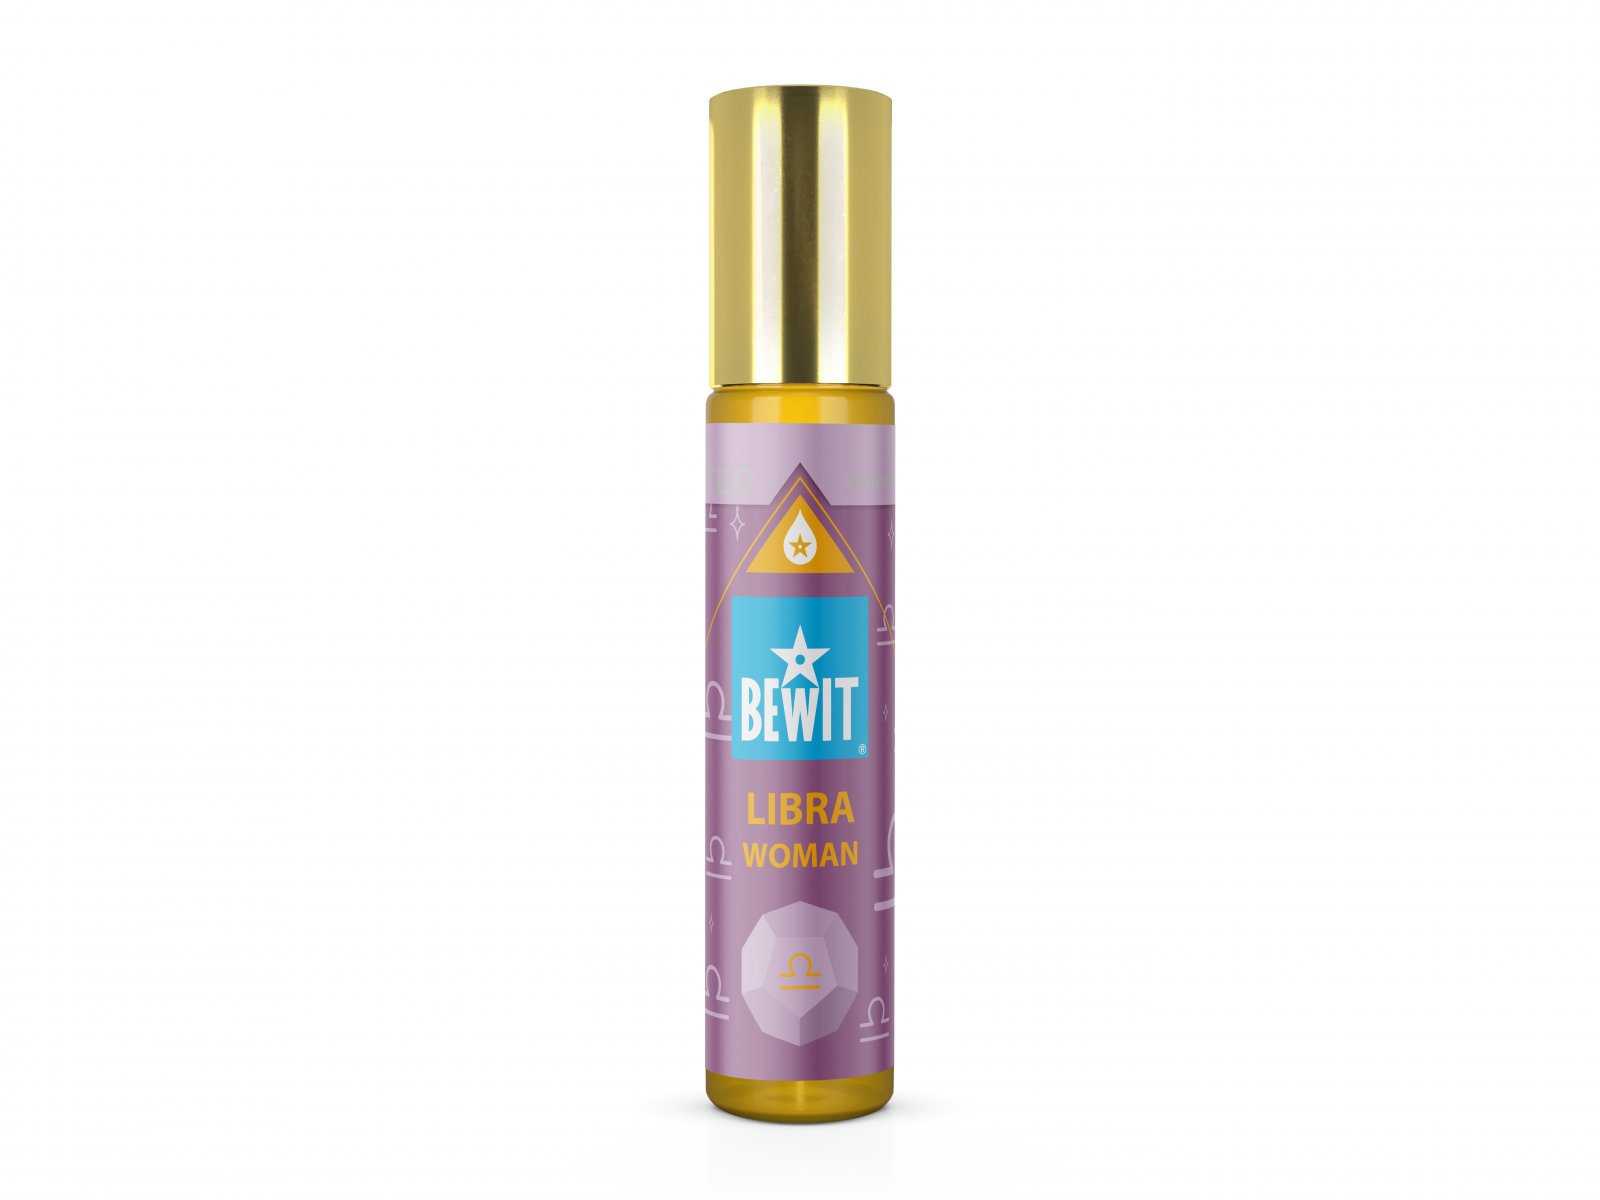 BEWIT WOMAN LIBRA (VÁHY) - Ženský roll-on olejový parfém